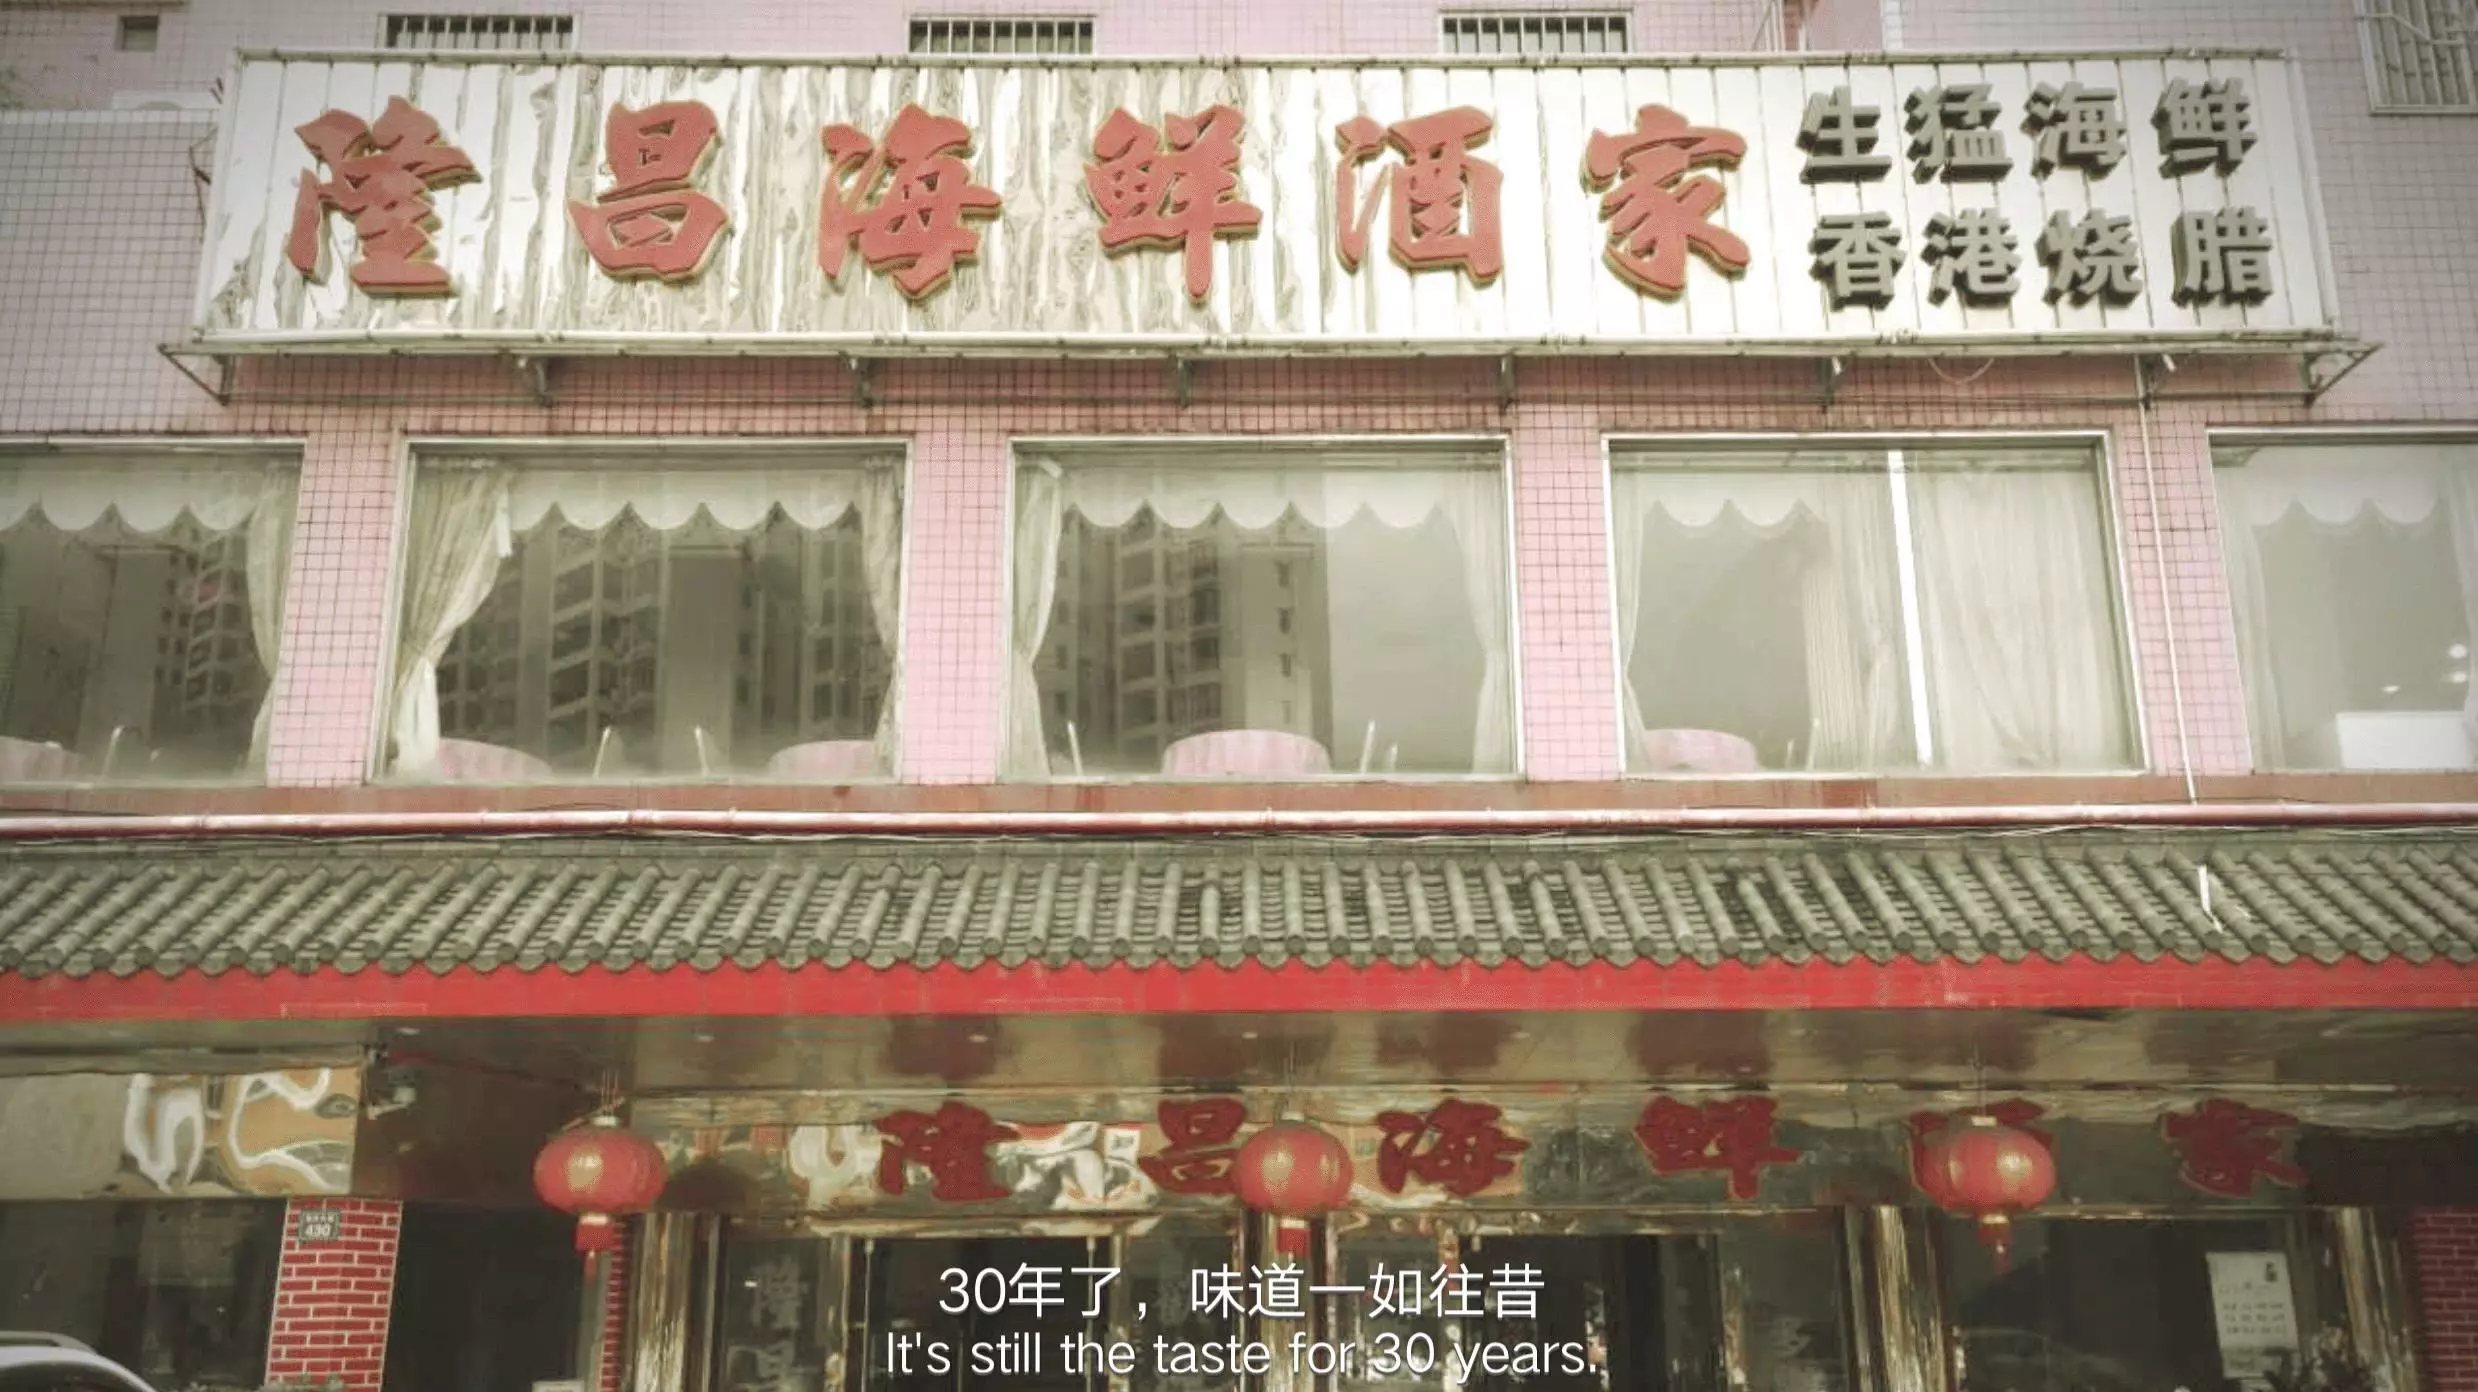 这一家老字号,已在惠州地区三十多年屹立不倒,它就是隆昌海鲜酒家